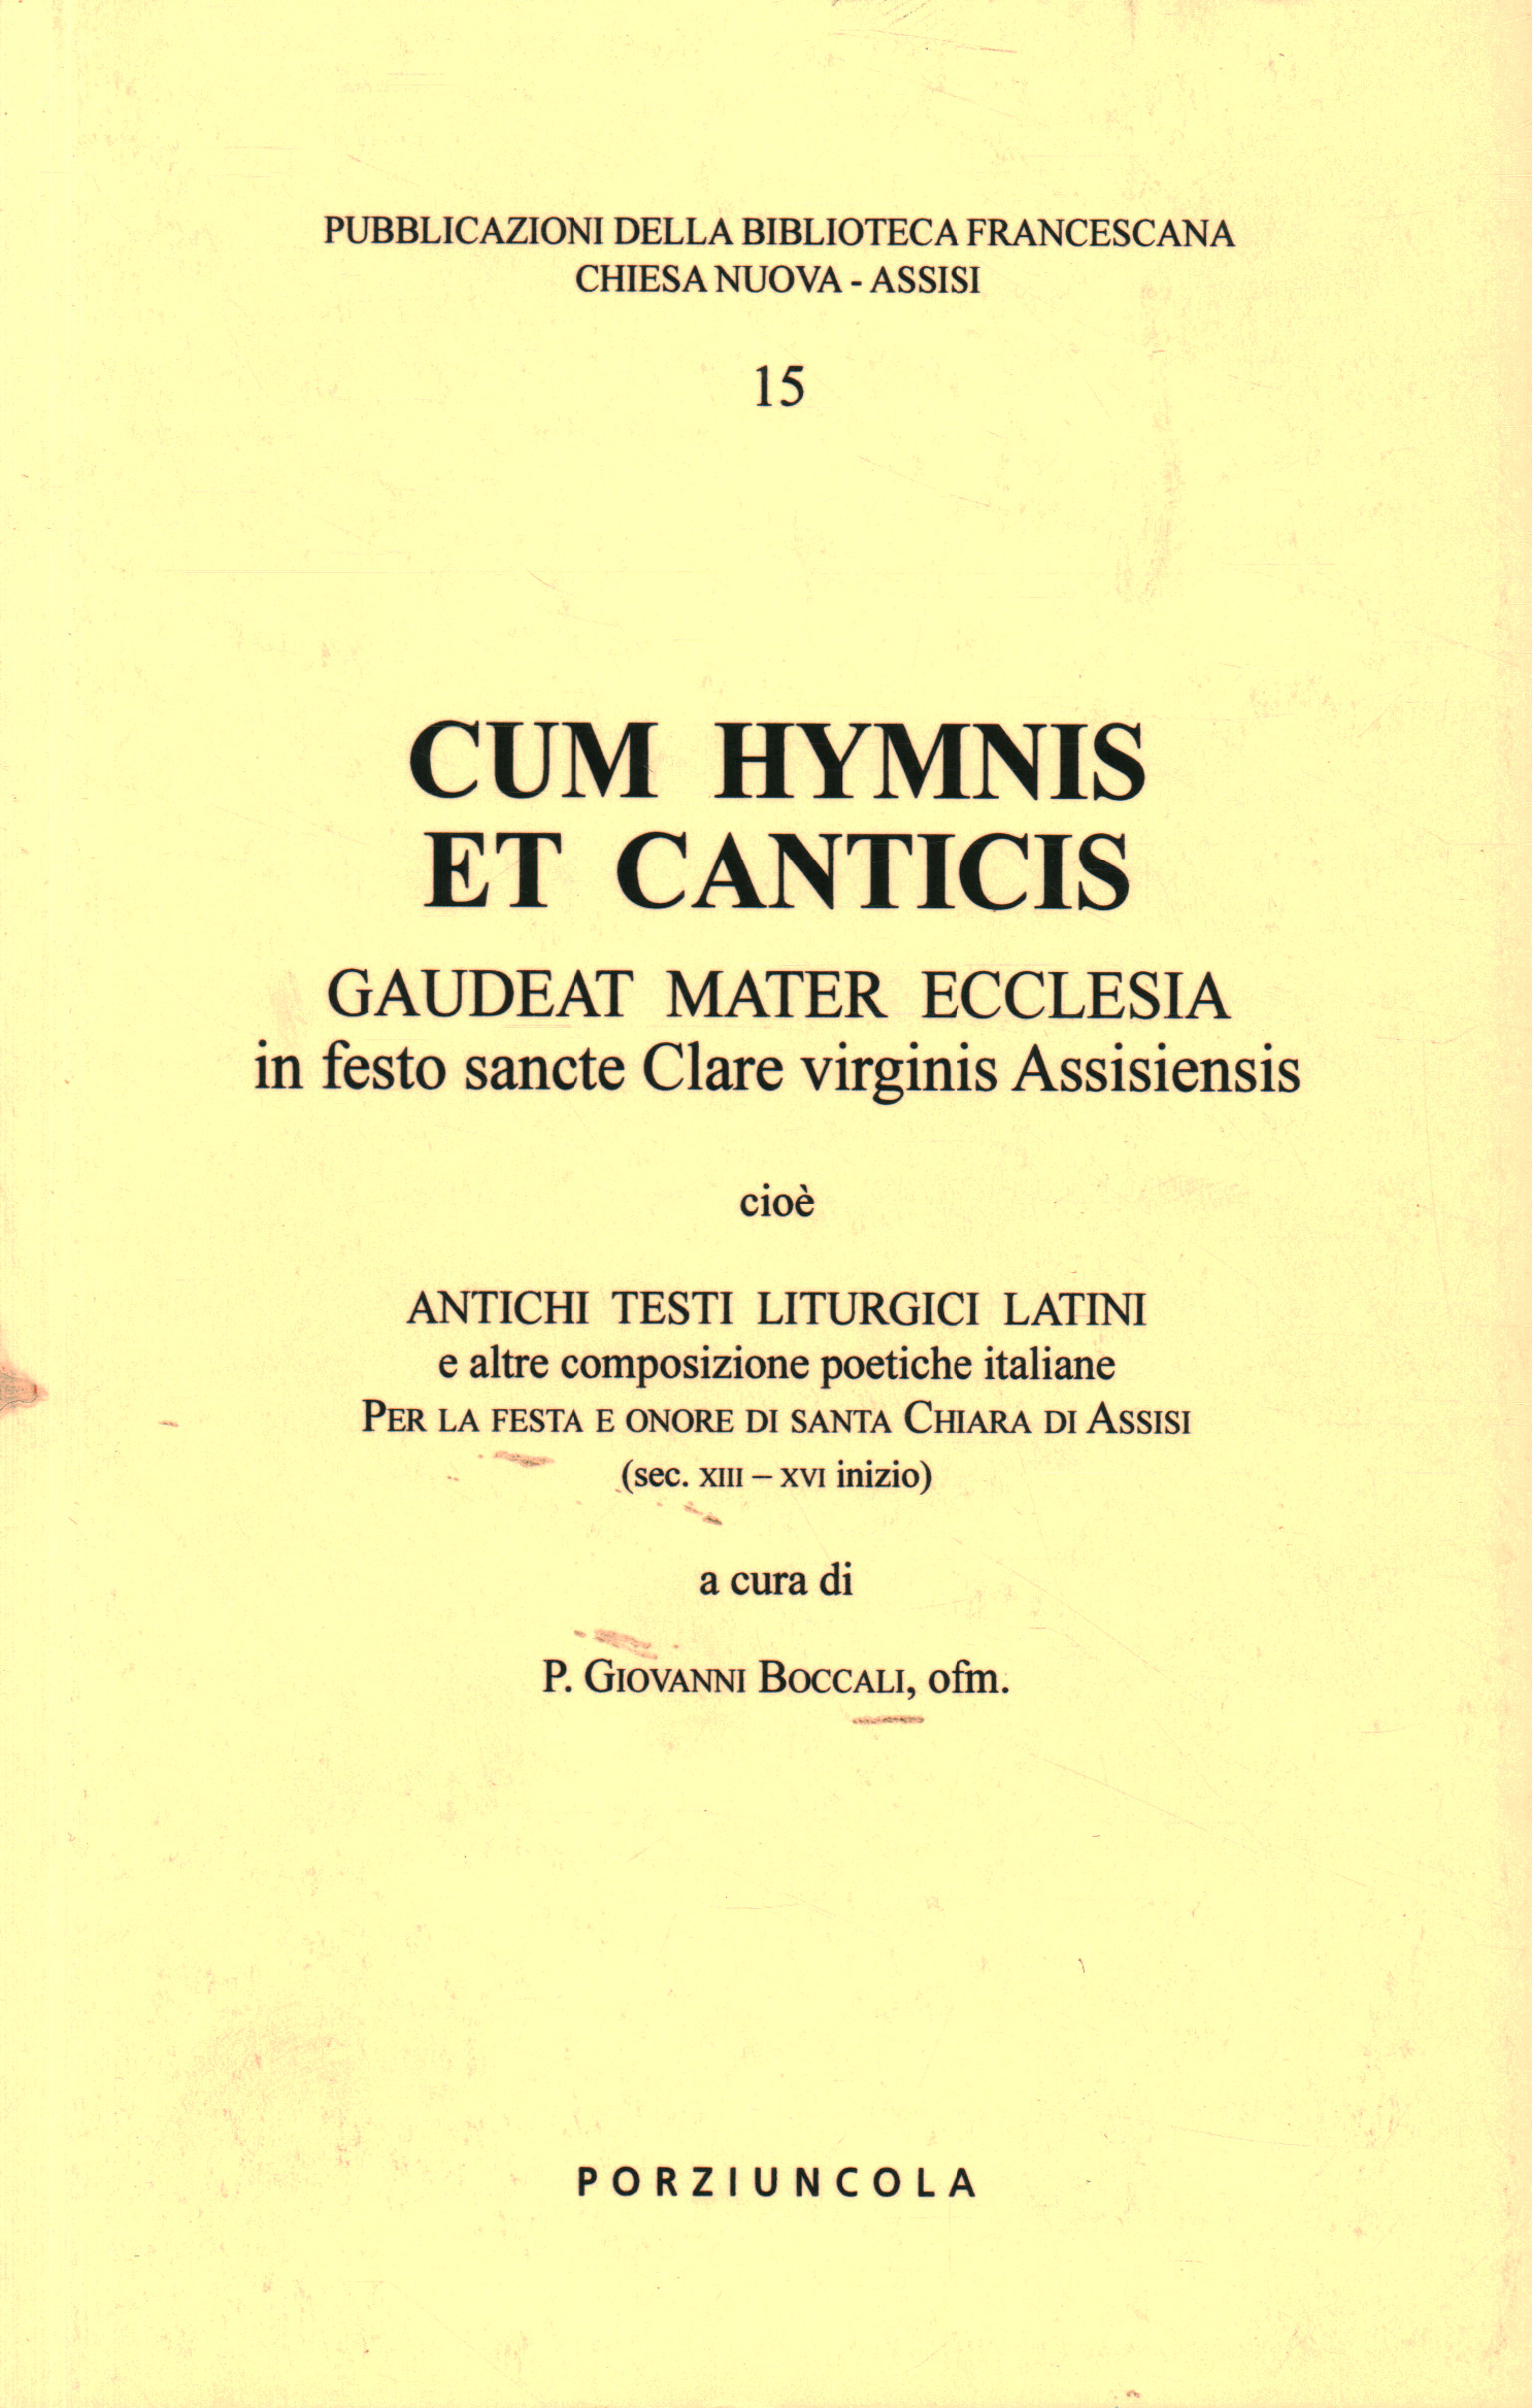 Cum Hymnis et canticis, Giovanni Boccali